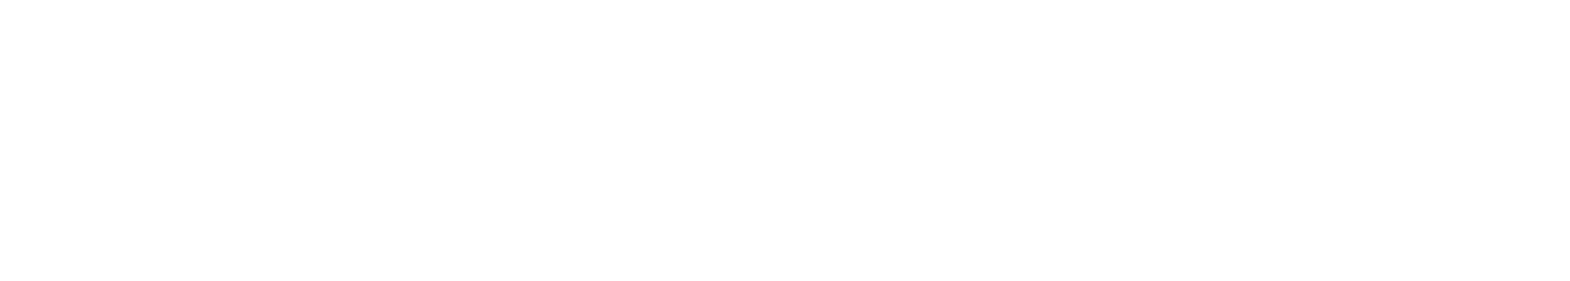 Enphase Energy
 logo grand pour les fonds sombres (PNG transparent)